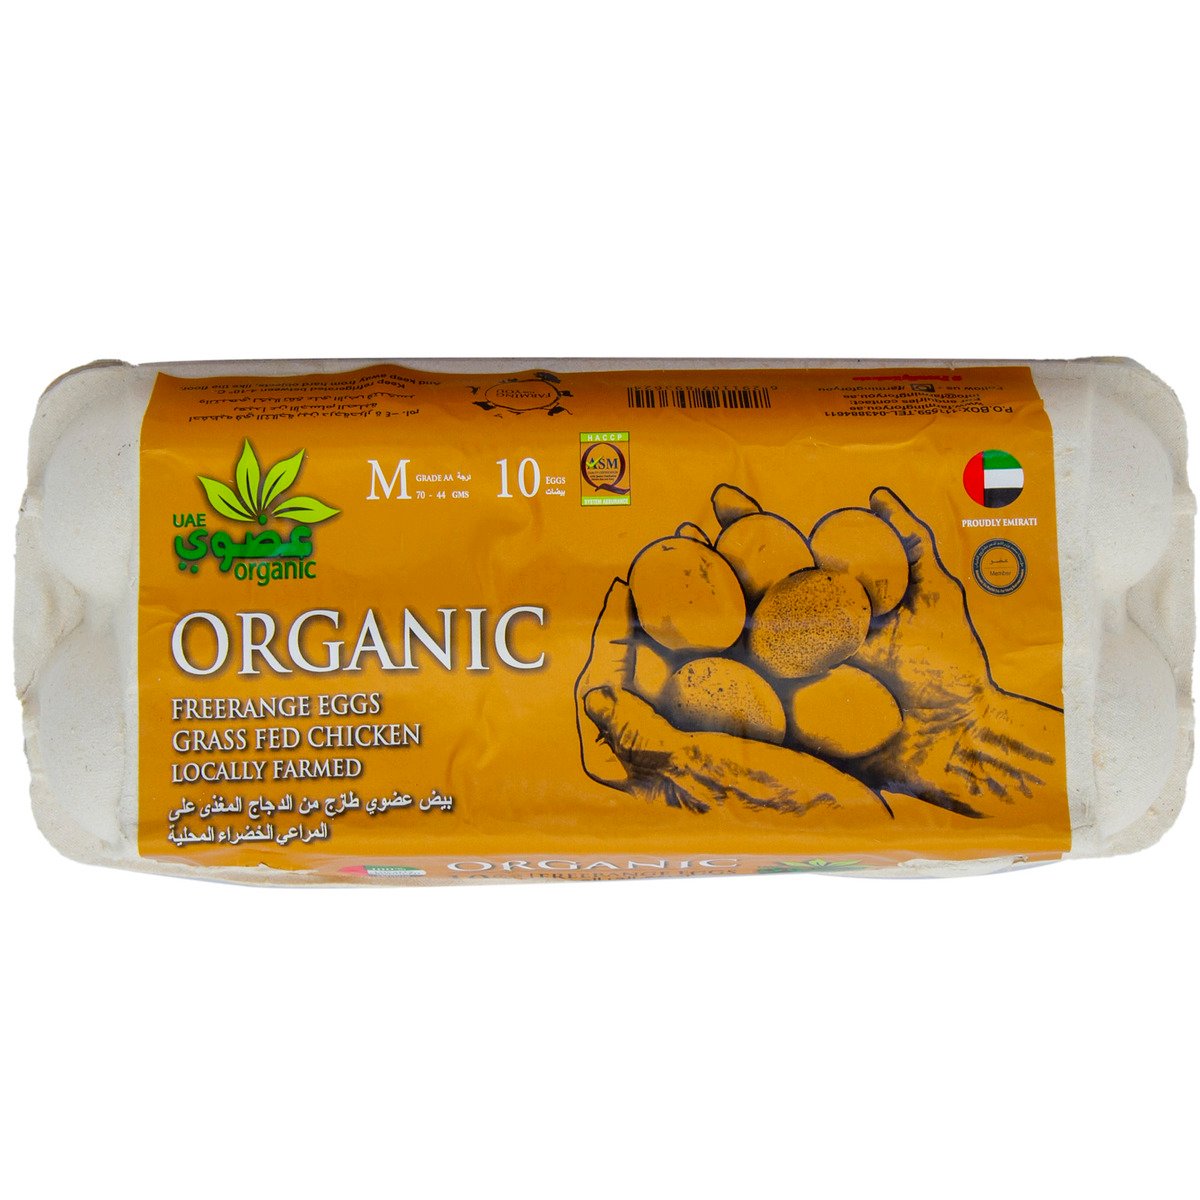 Buy Organic Free Range Eggs 10 pcs Online at Best Price | Organic Eggs | Lulu UAE in UAE